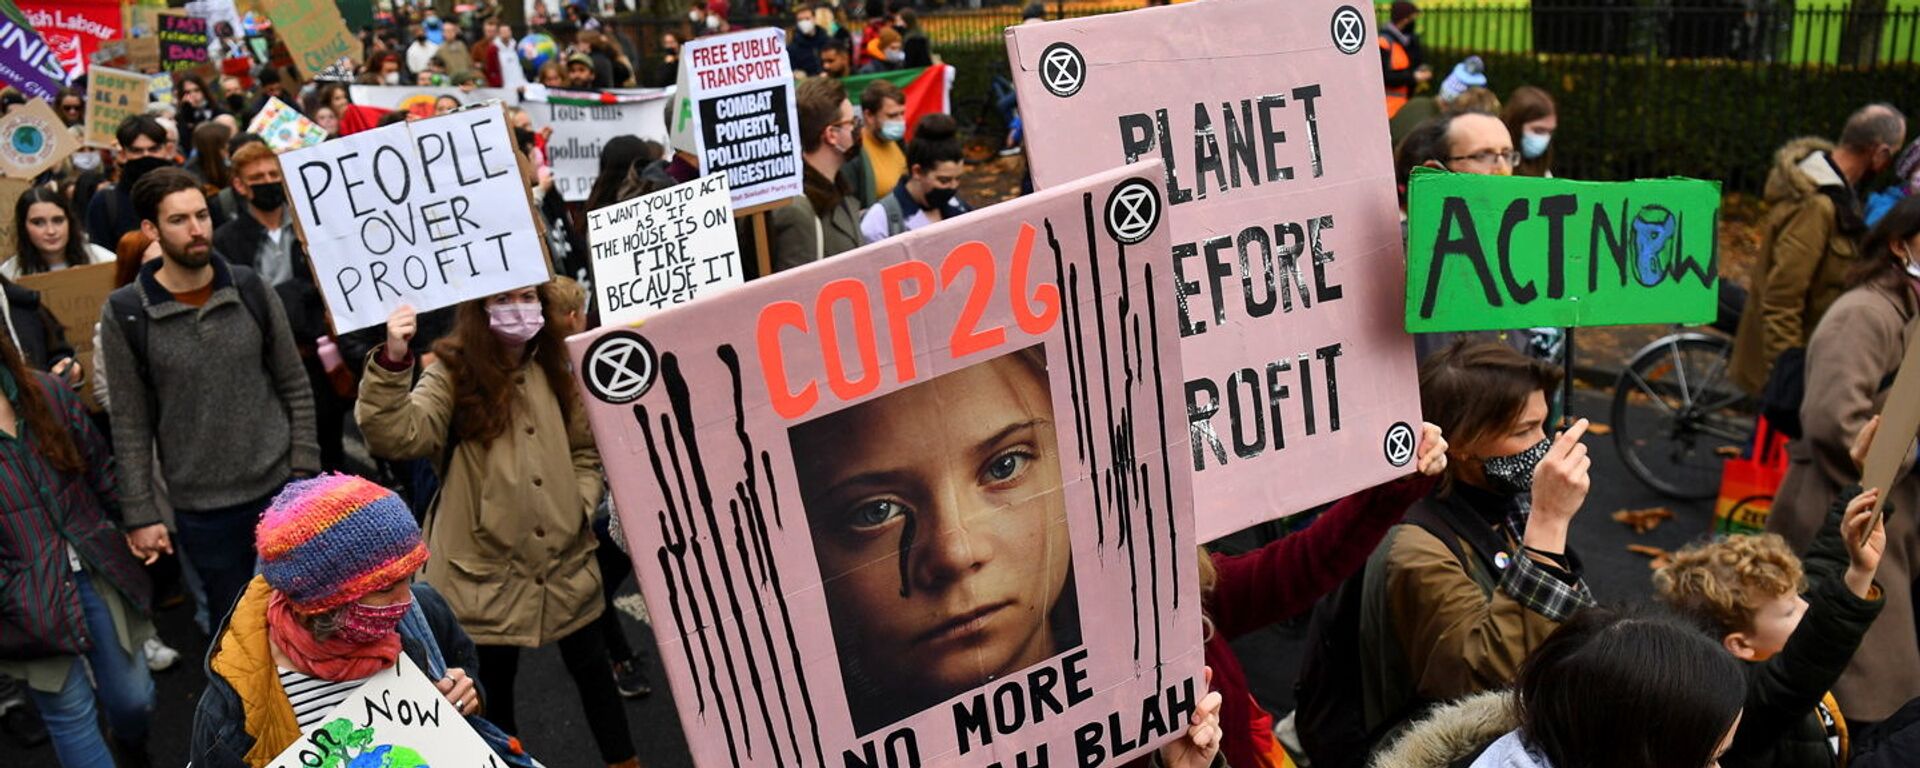 Экоактивисты с плакатом Греты Тунберг на климатическом марше «Пятница ради будущего» в Глазго, Шотландия - Sputnik 日本, 1920, 14.11.2021